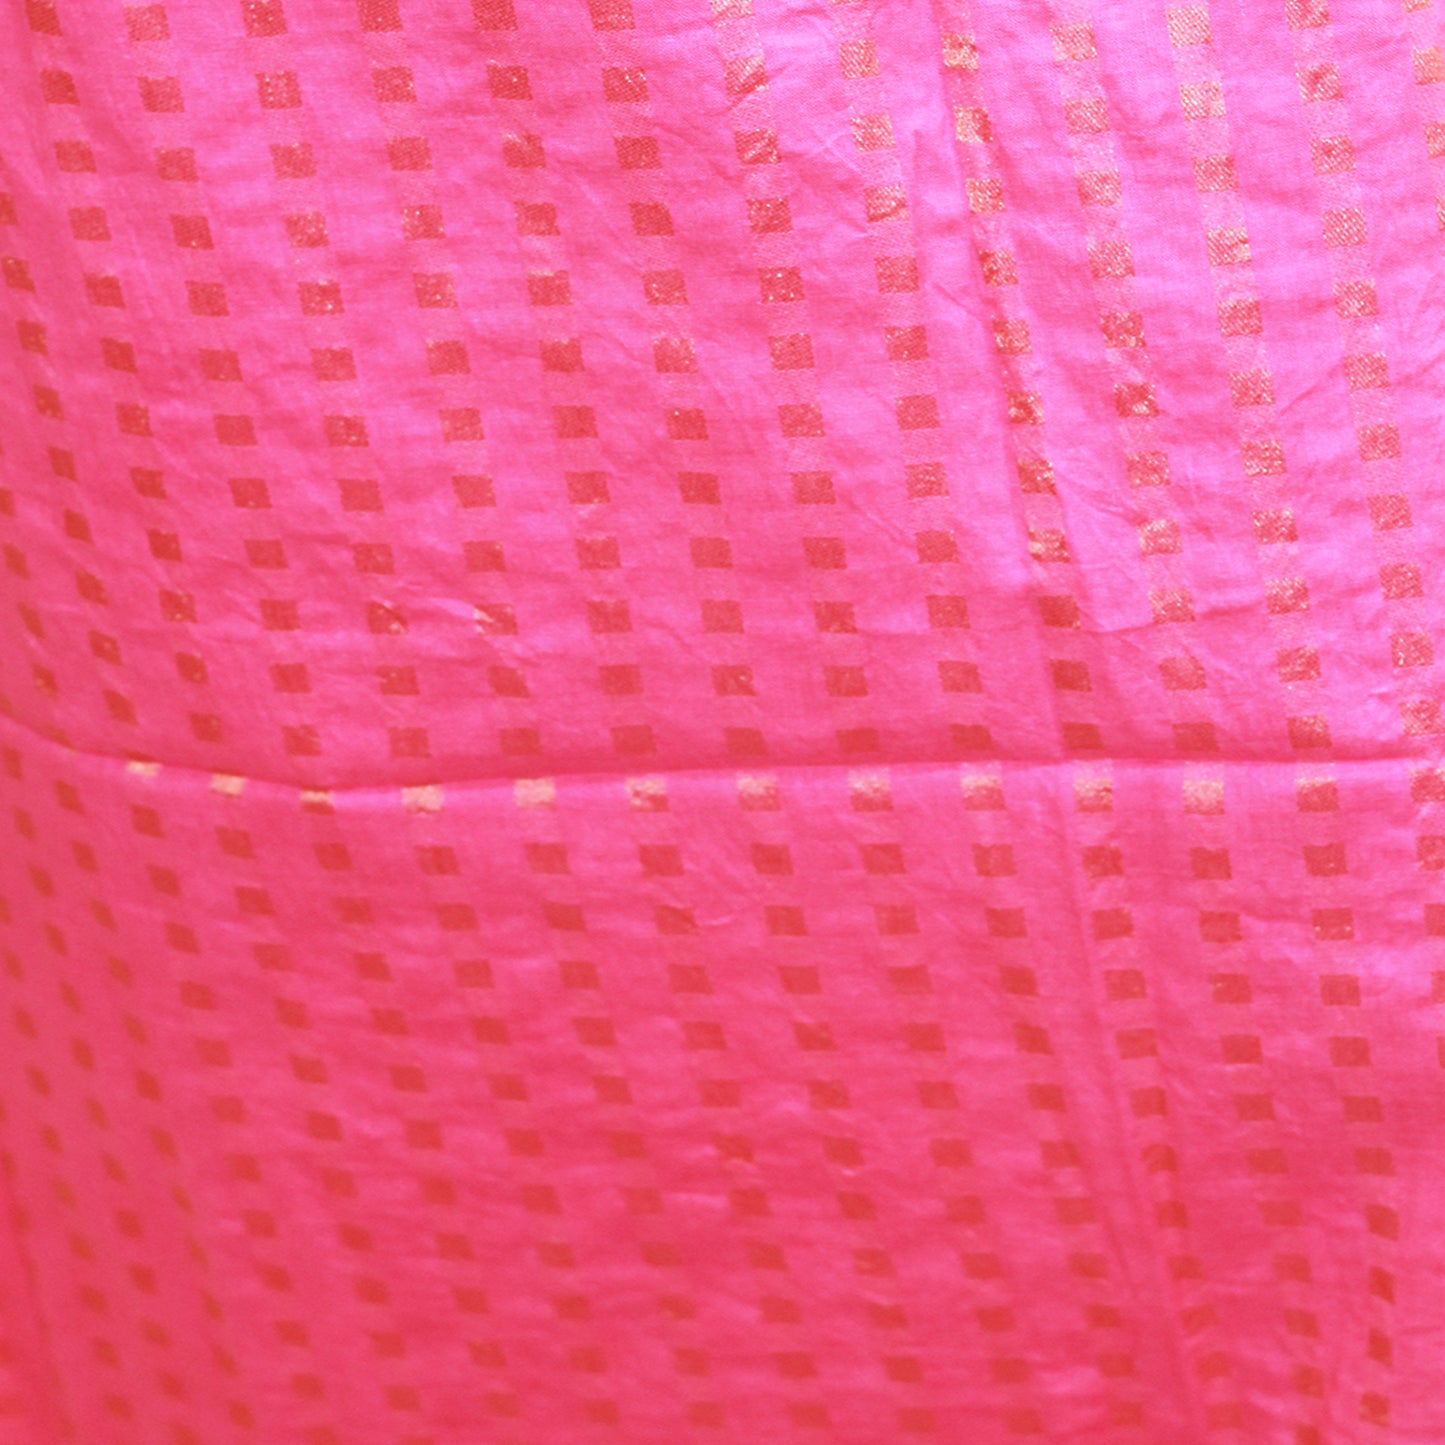 Pink Cotton Bandhani Dress Material